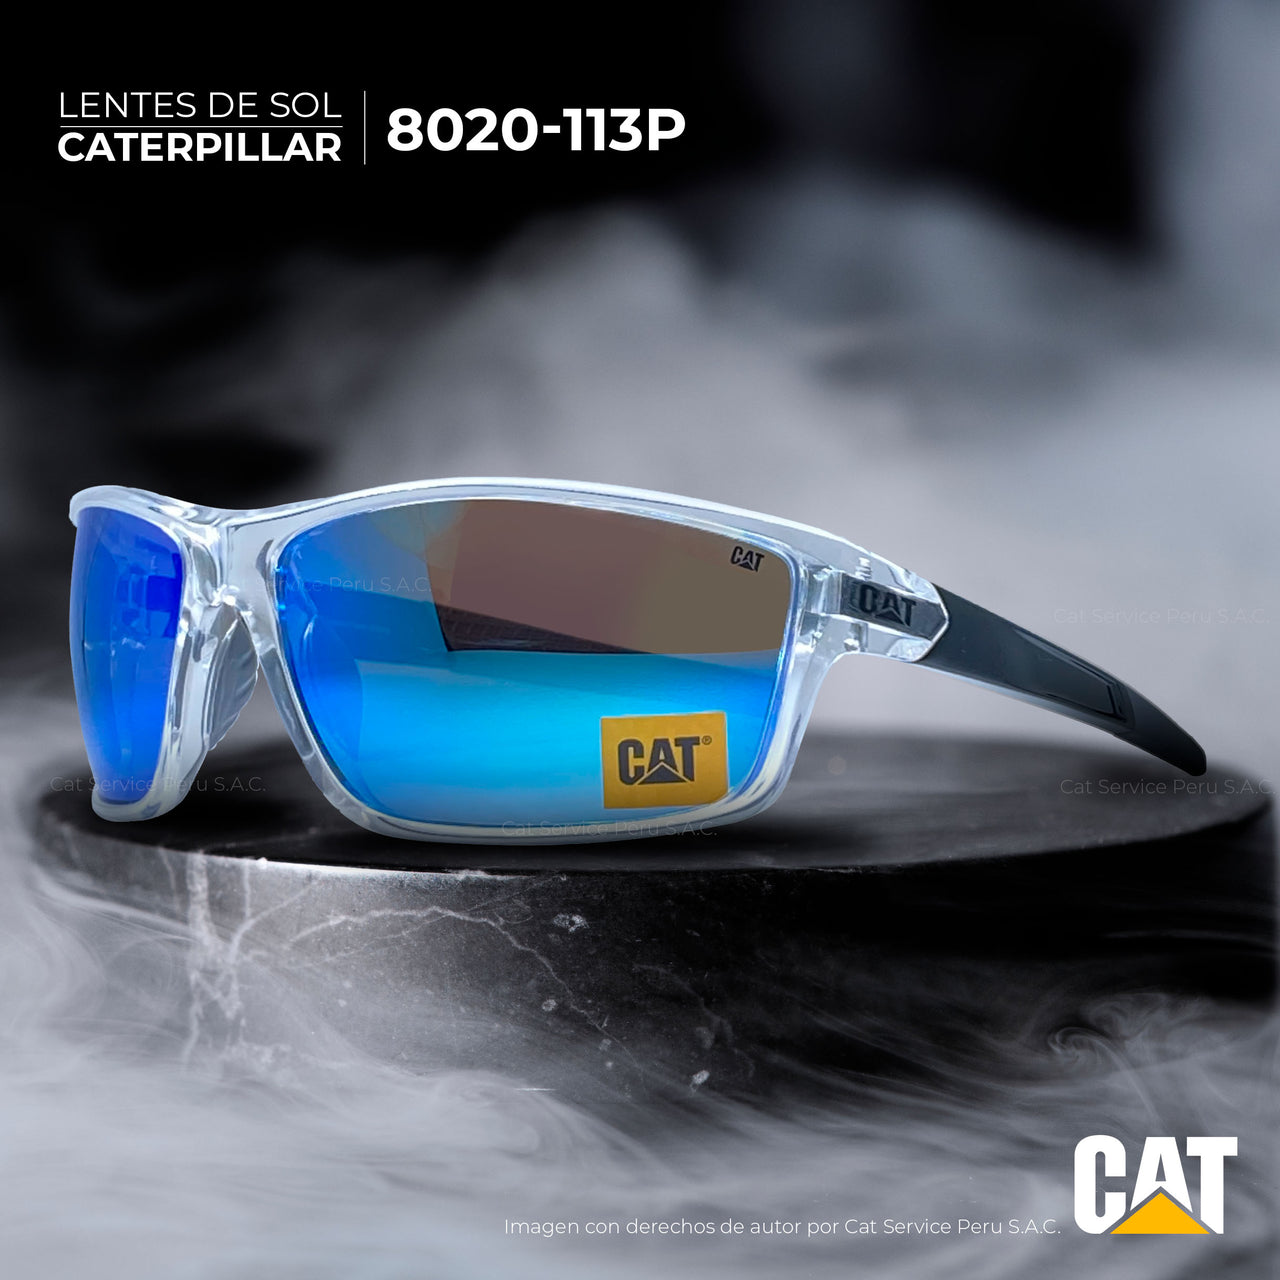 कैट सीटीएस-8020-113पी पोलराइज्ड ब्लू मून्स धूप का चश्मा 